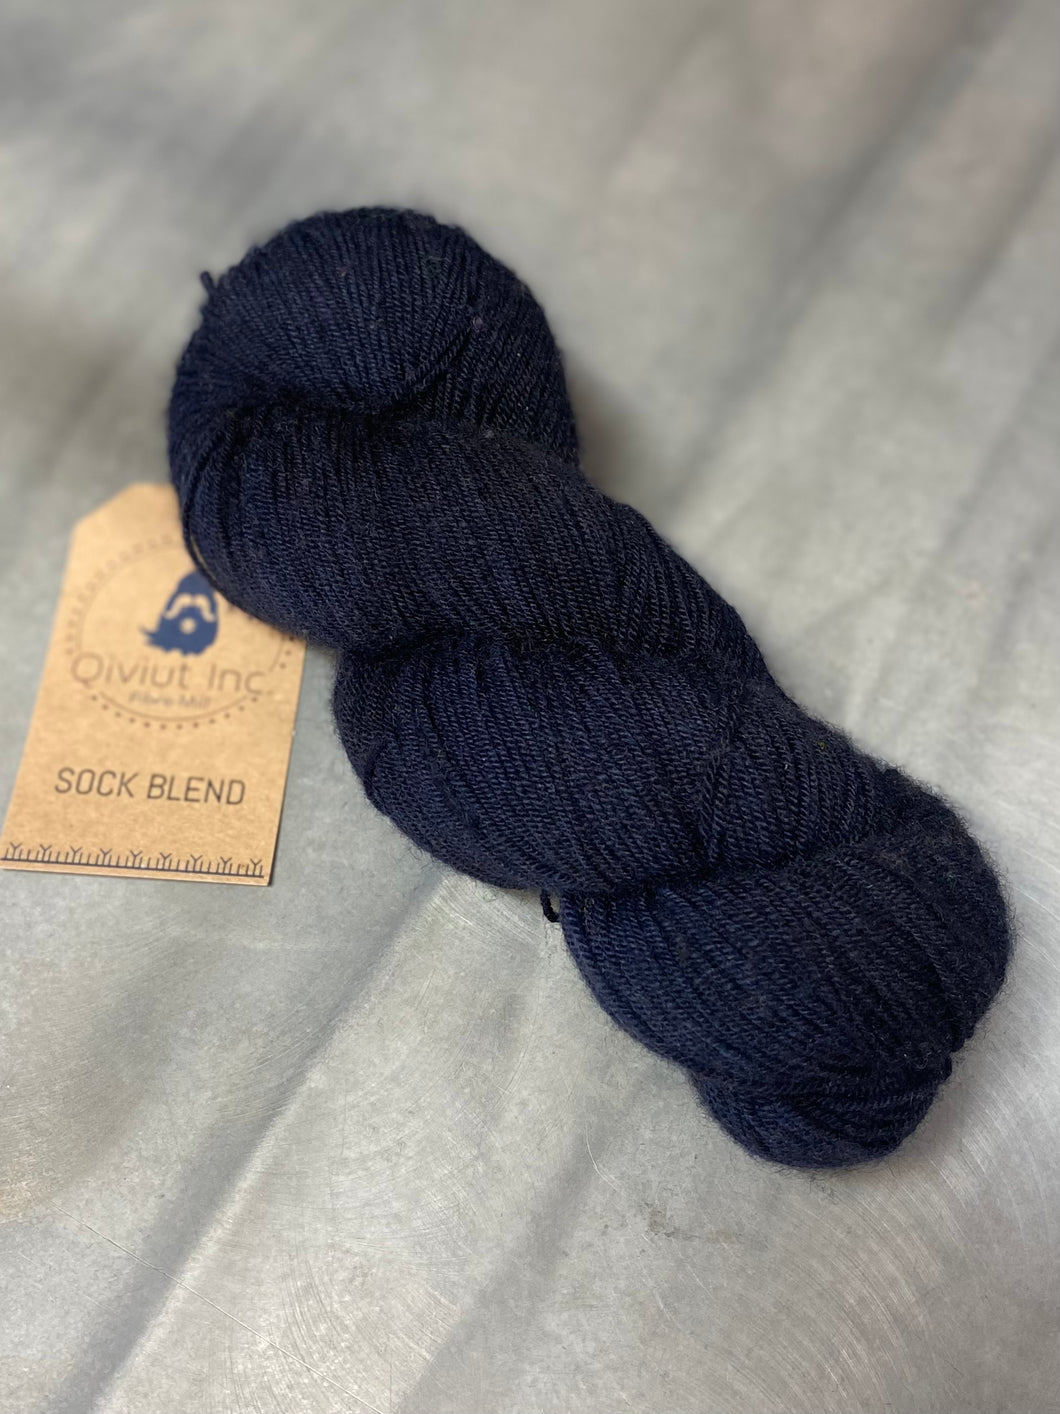 Qiviut Sock yarn in Midnight Blue (3.5oz)